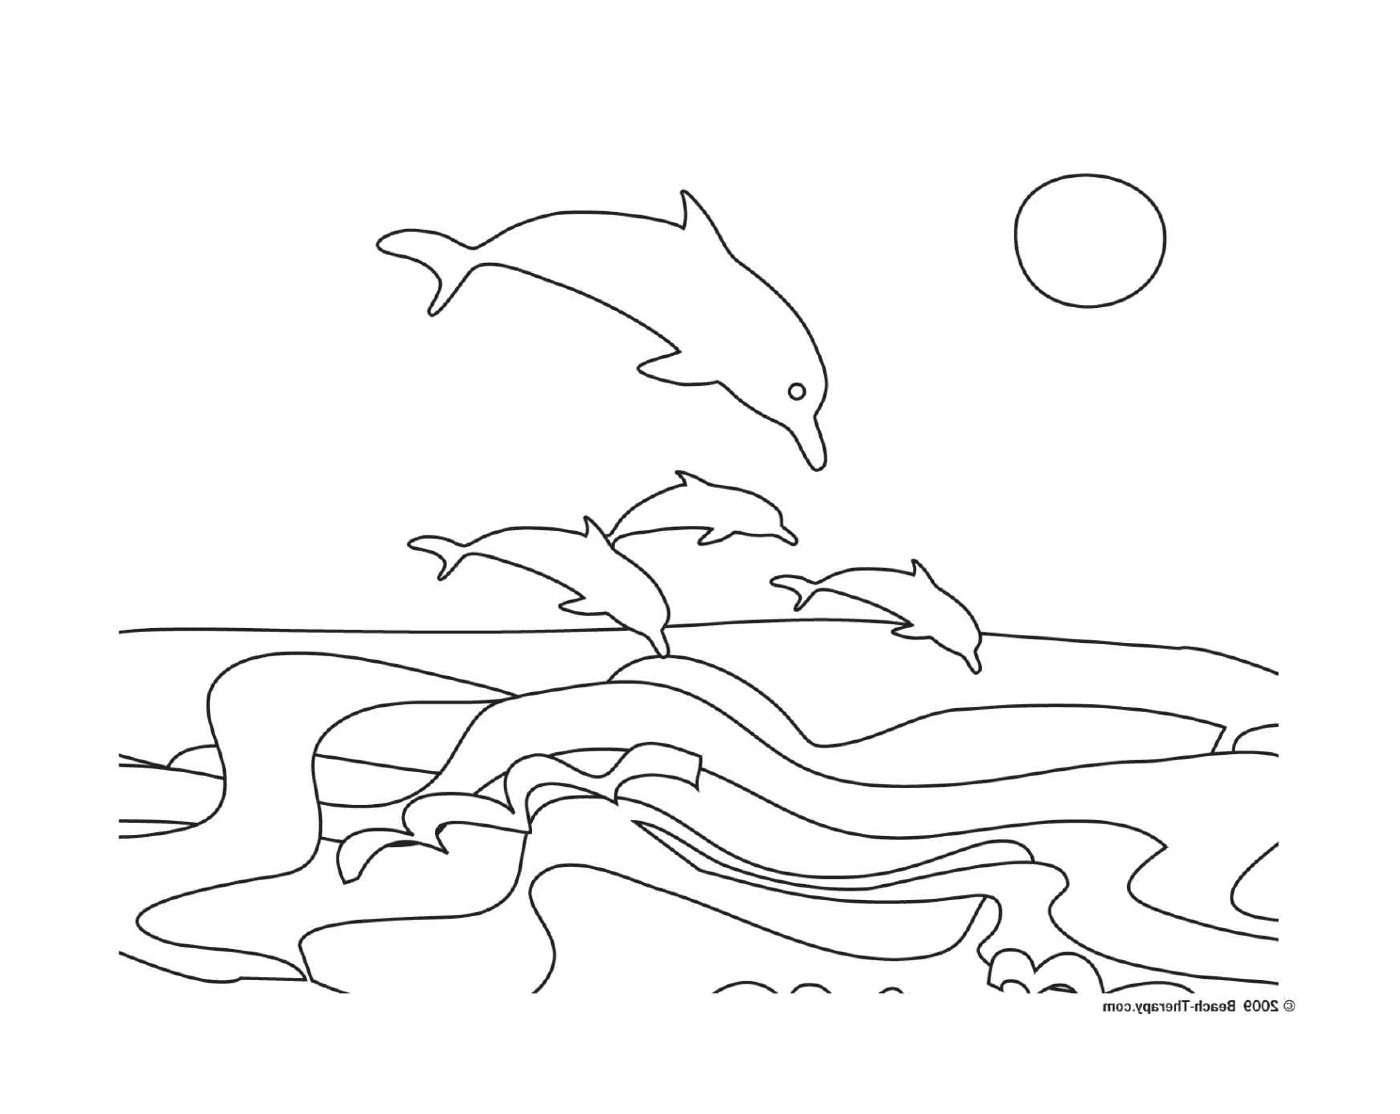  Grupo de golfinhos pulando para fora da água 